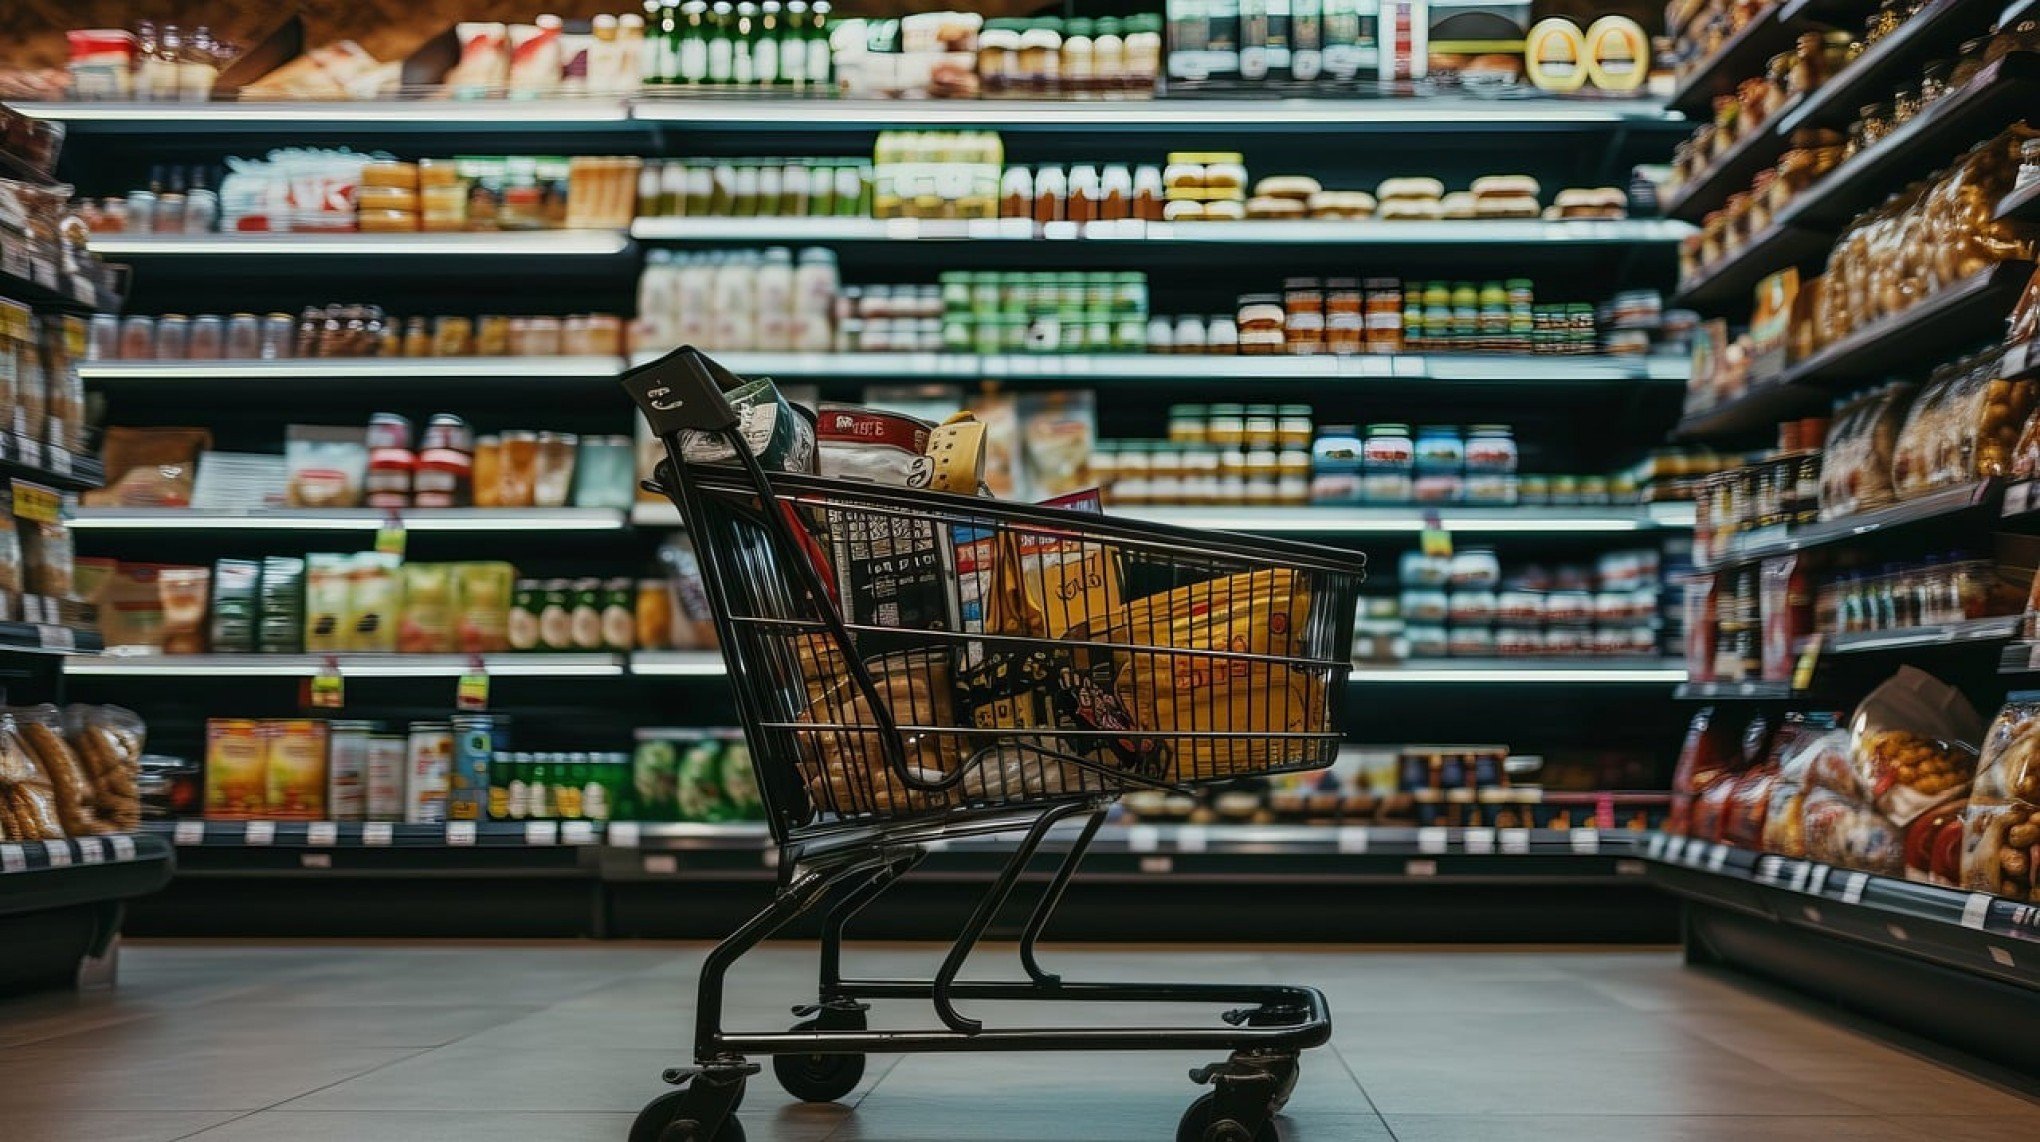 CATÁSTROFE NO RS: Vai faltar comida nos supermercados? Entidade explica cenário atual no Estado